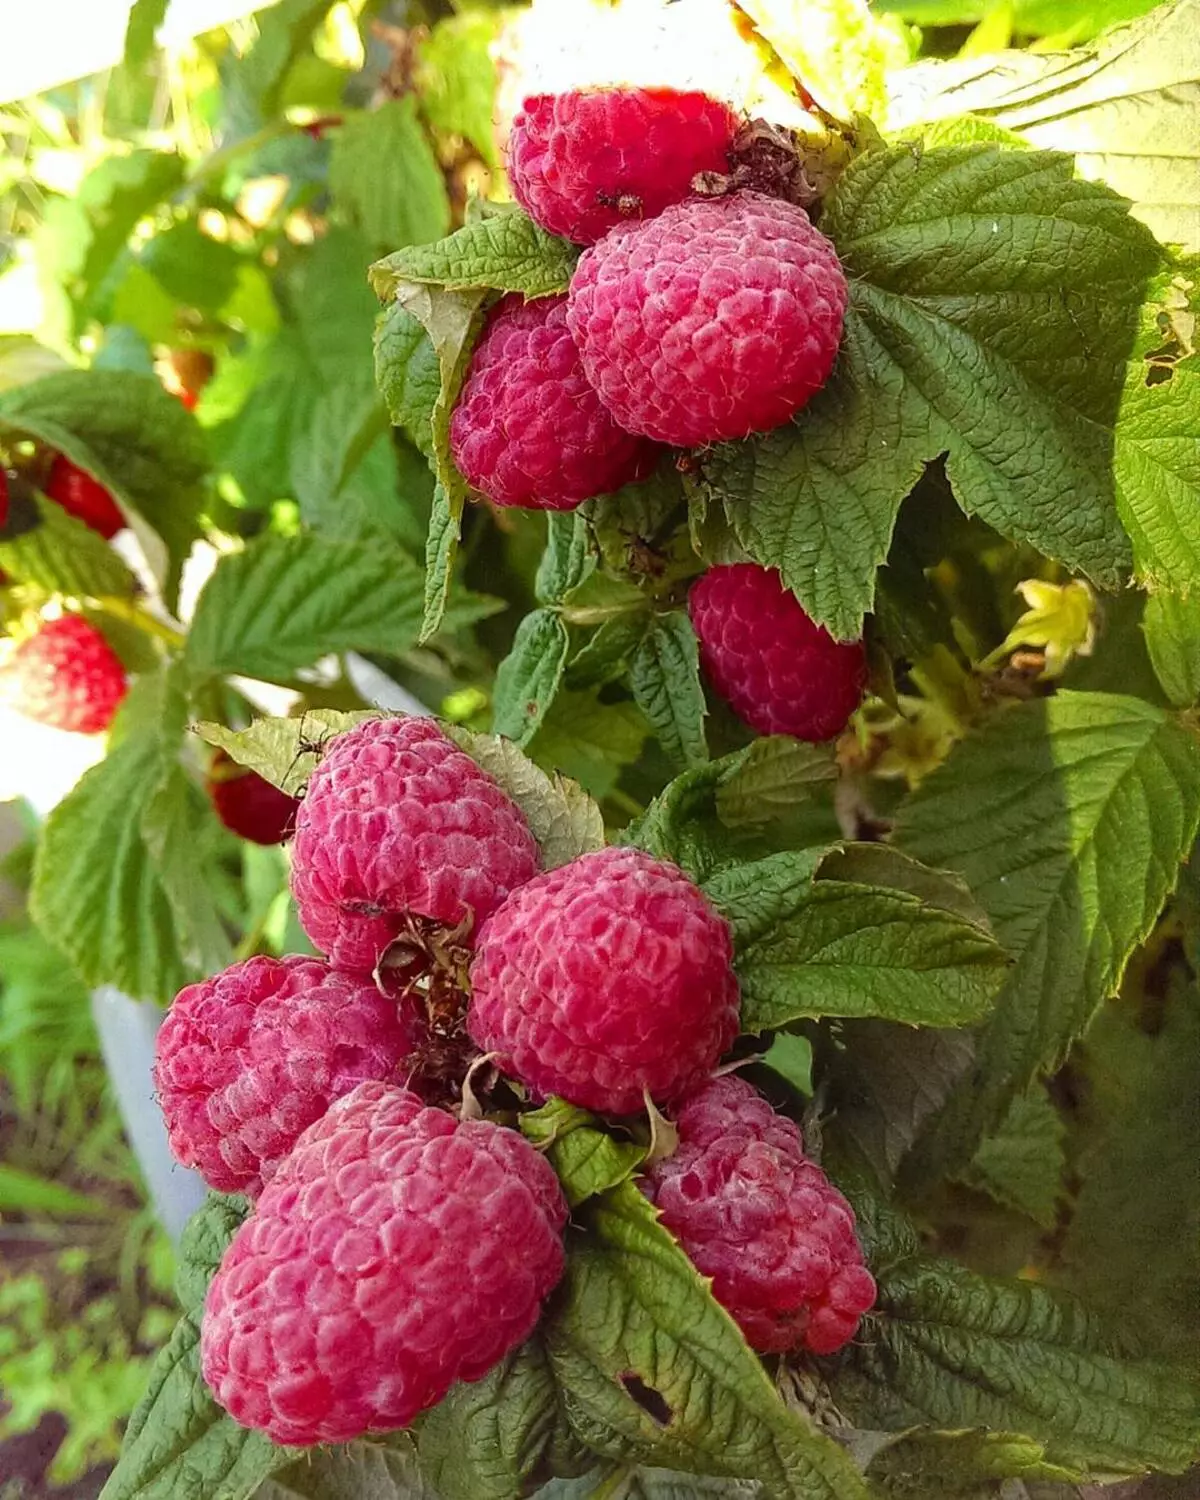 Raspberry tufișuri - ce să facă în iulie